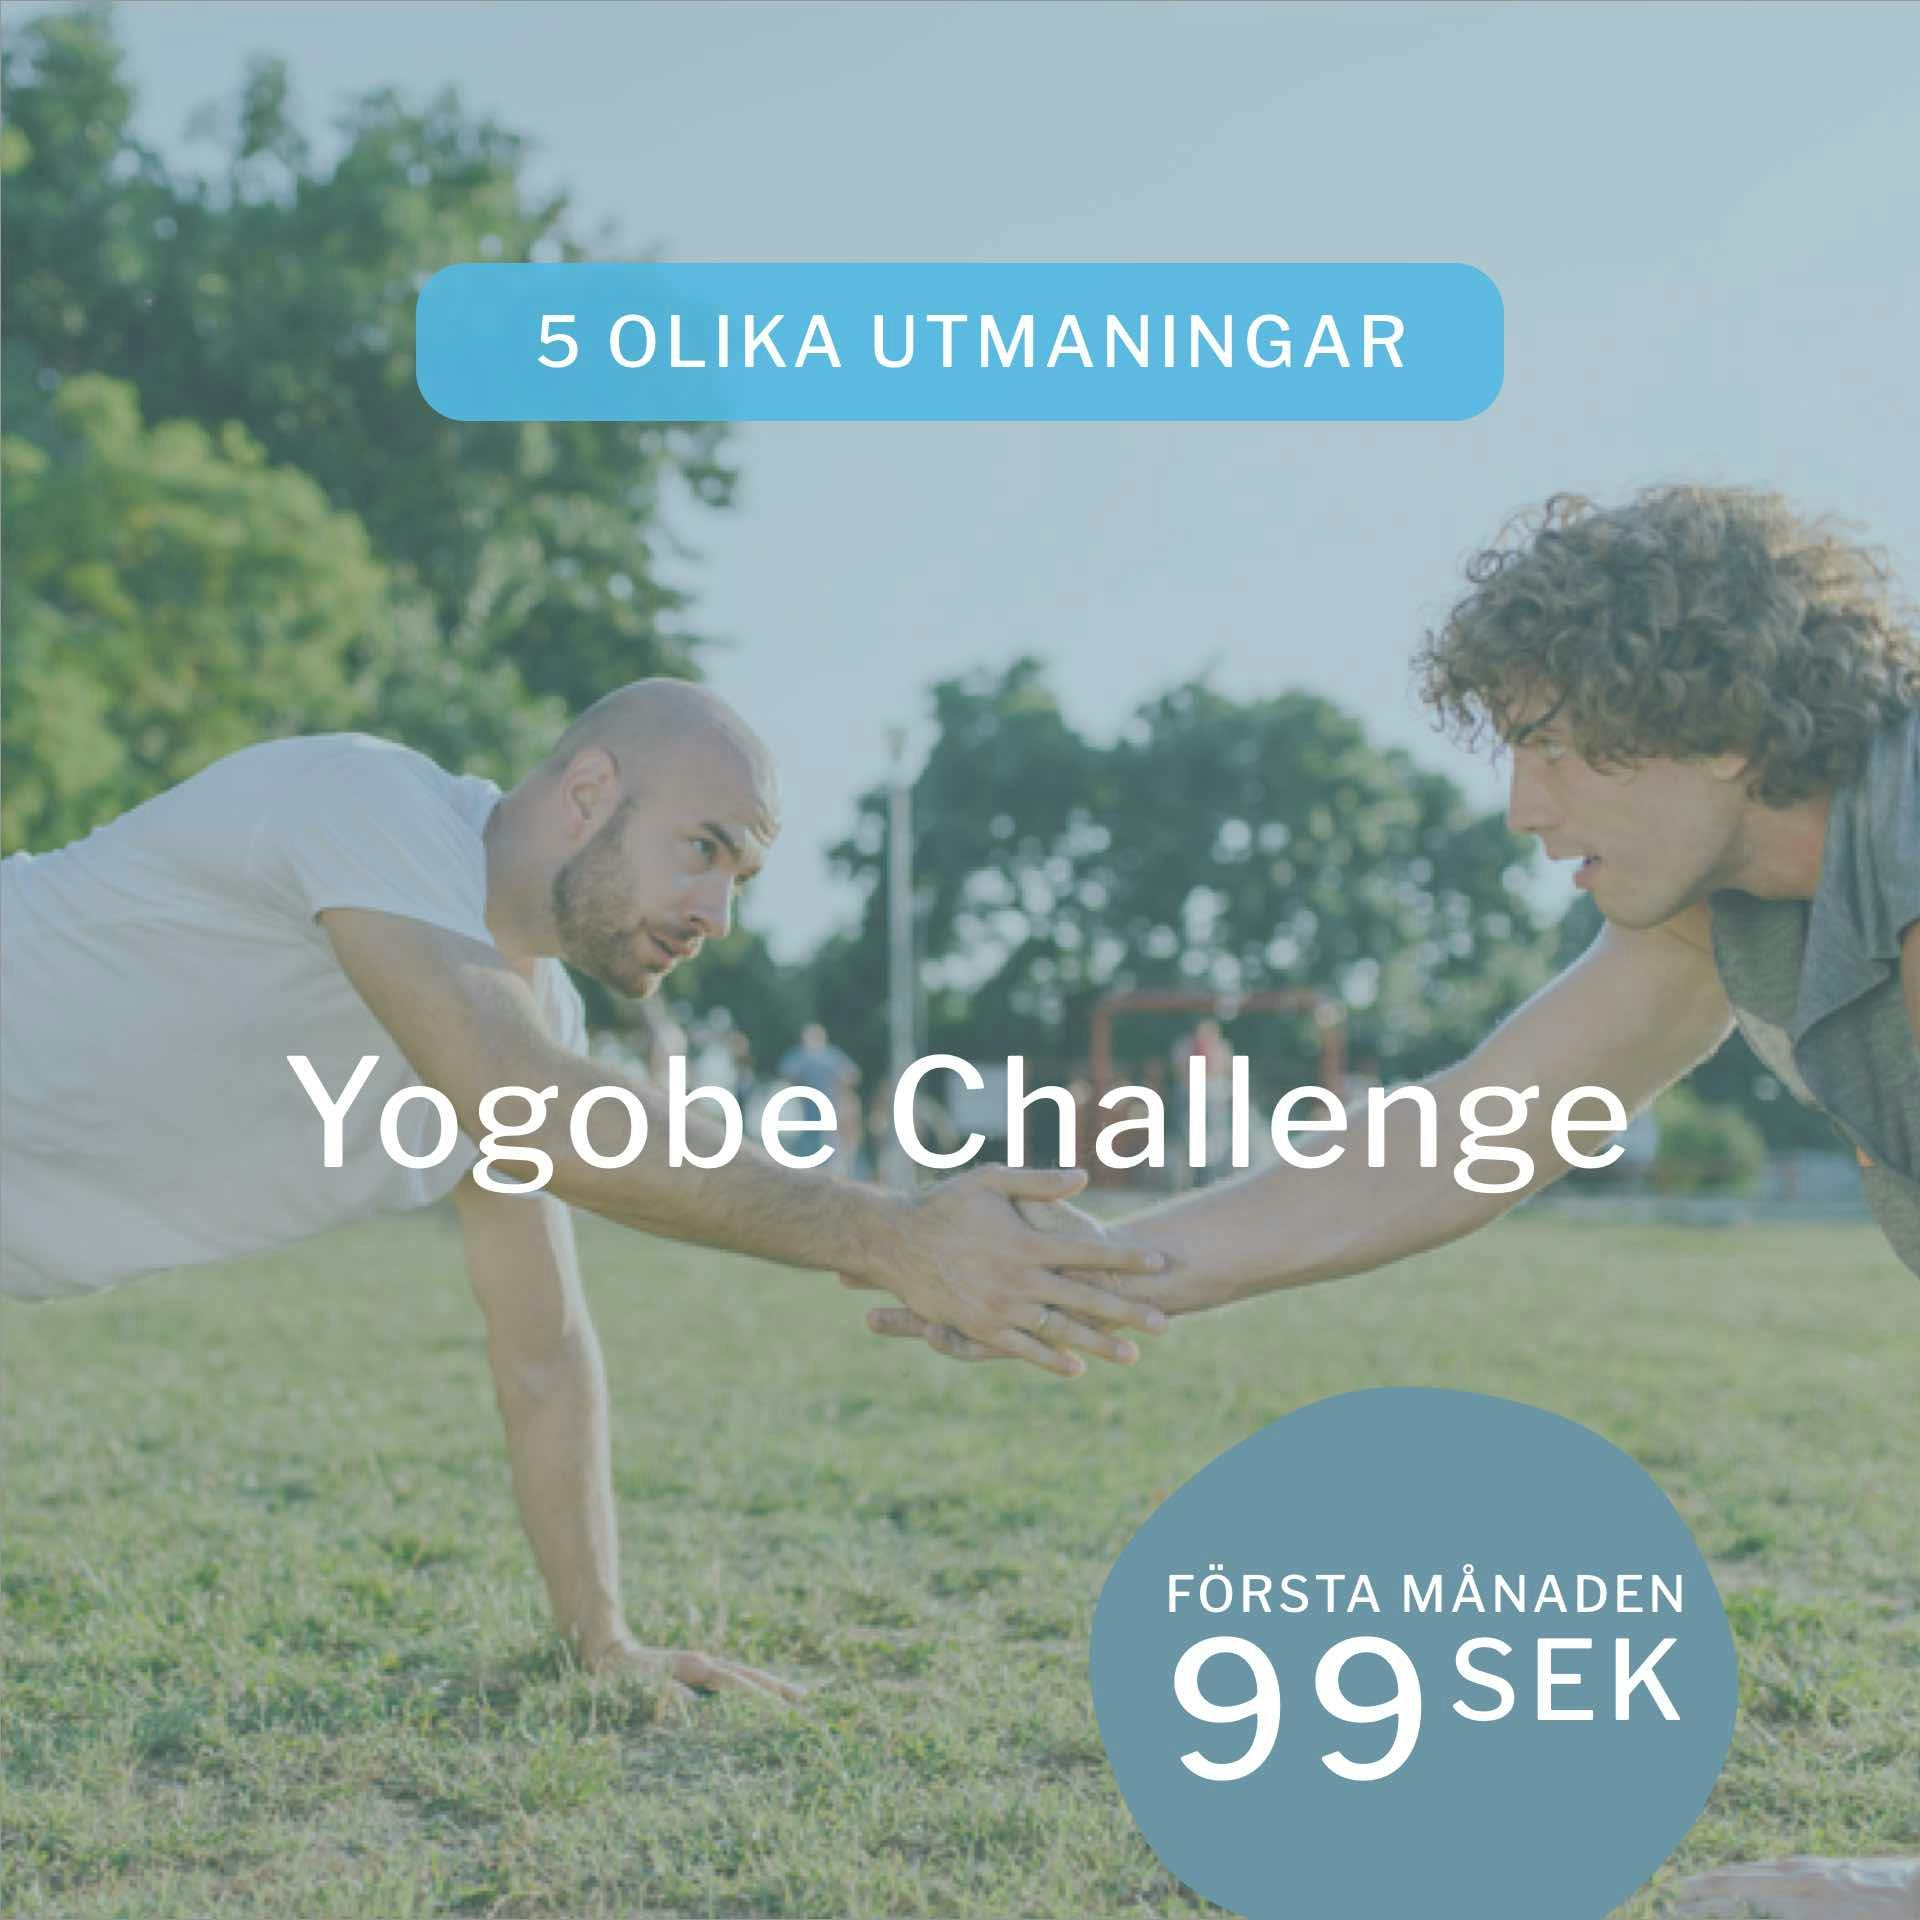 Joina Yogobe Challenge och delta vid en av våra fem olika utmaningar!